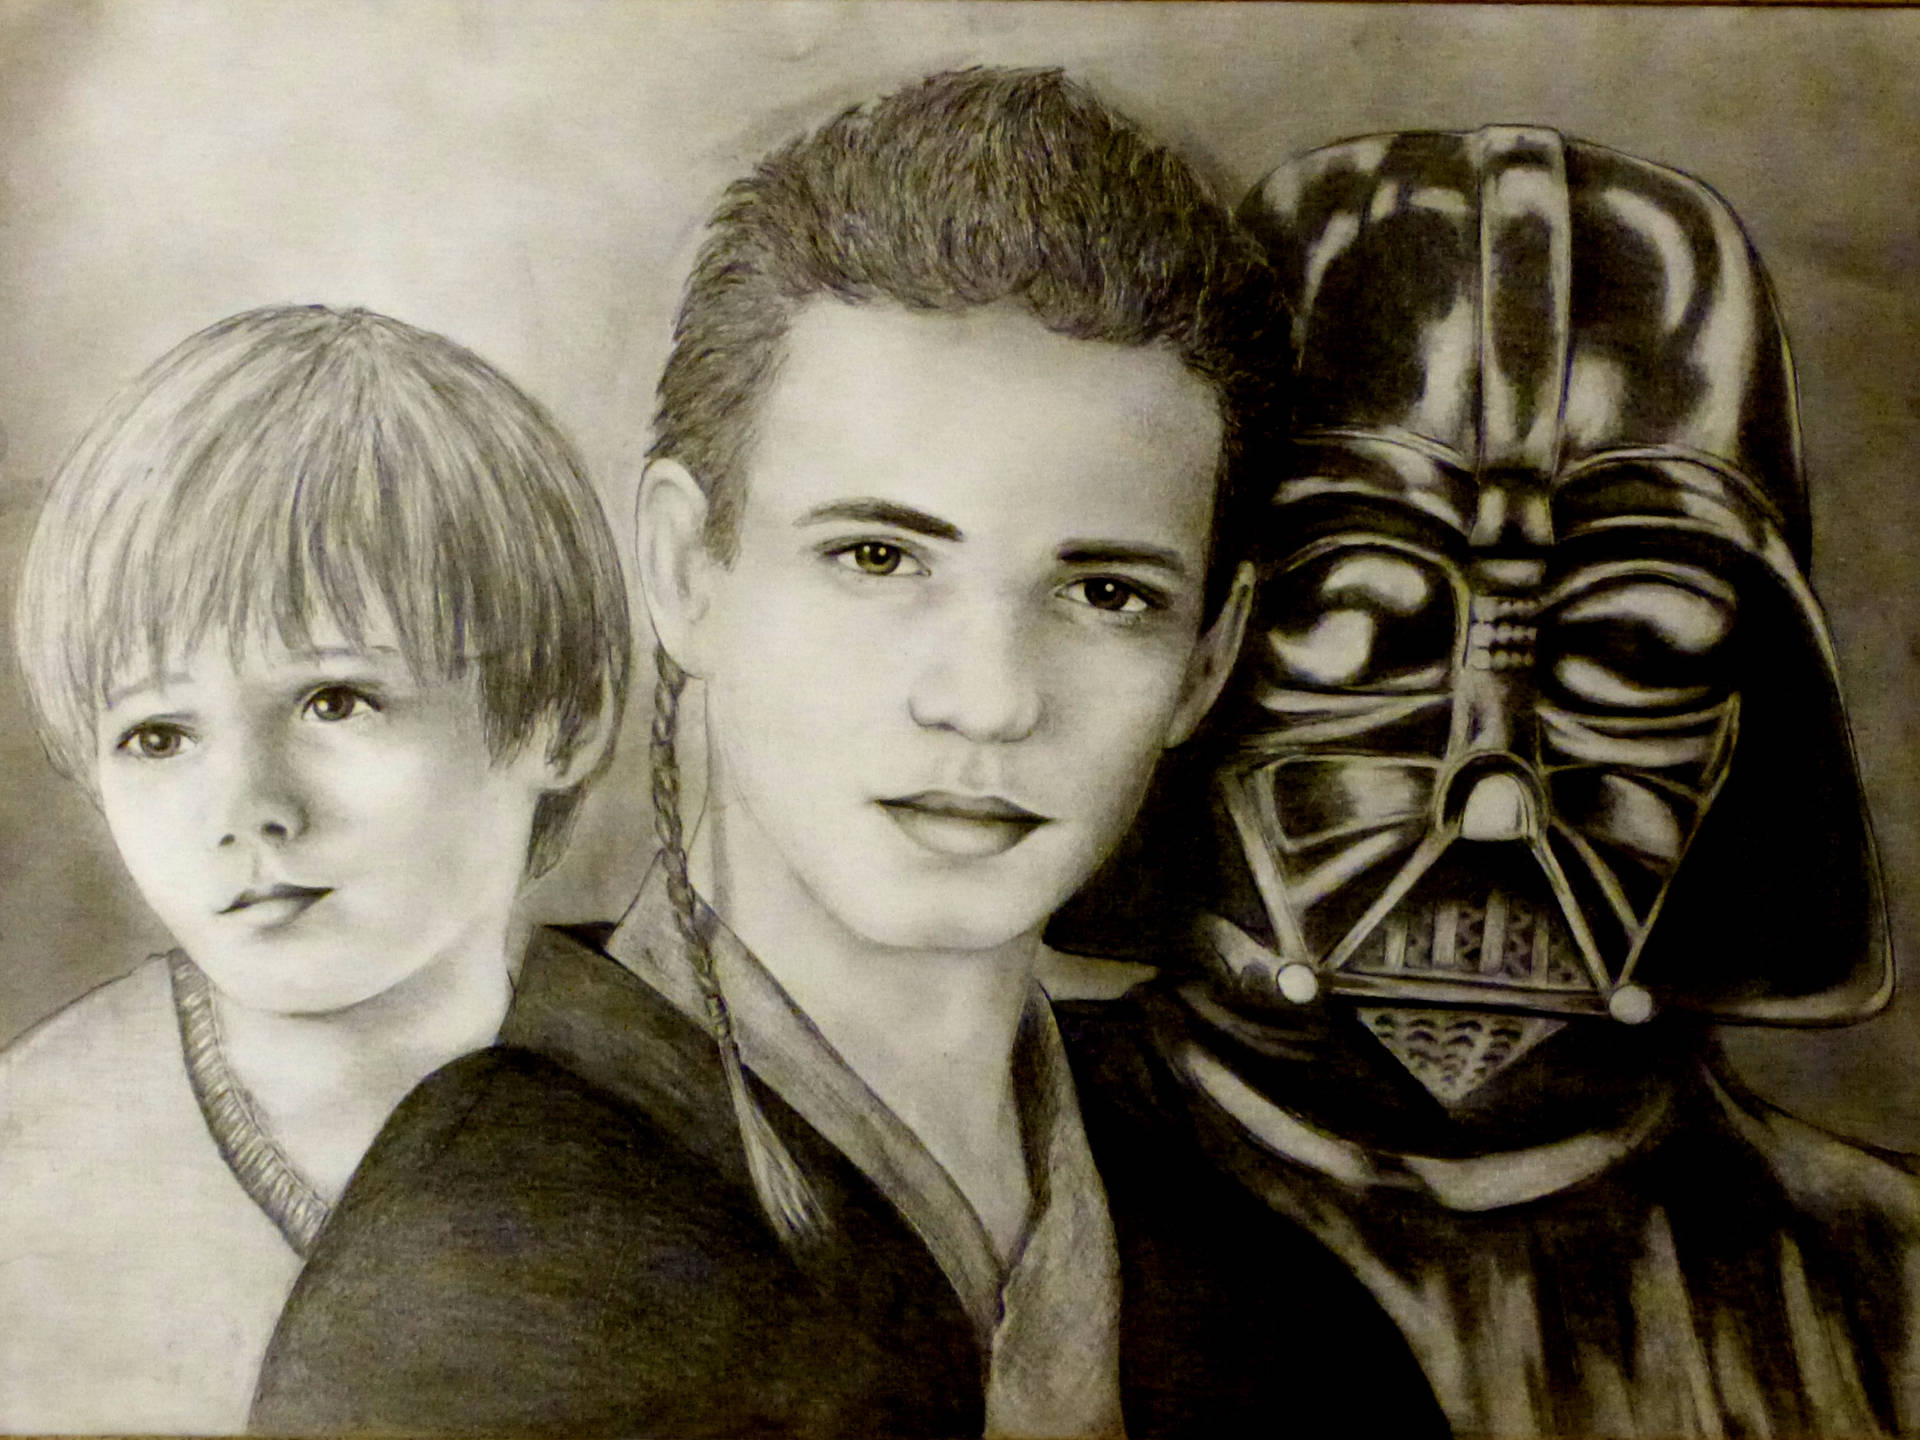 Three Faces Of Darth Vader 4k